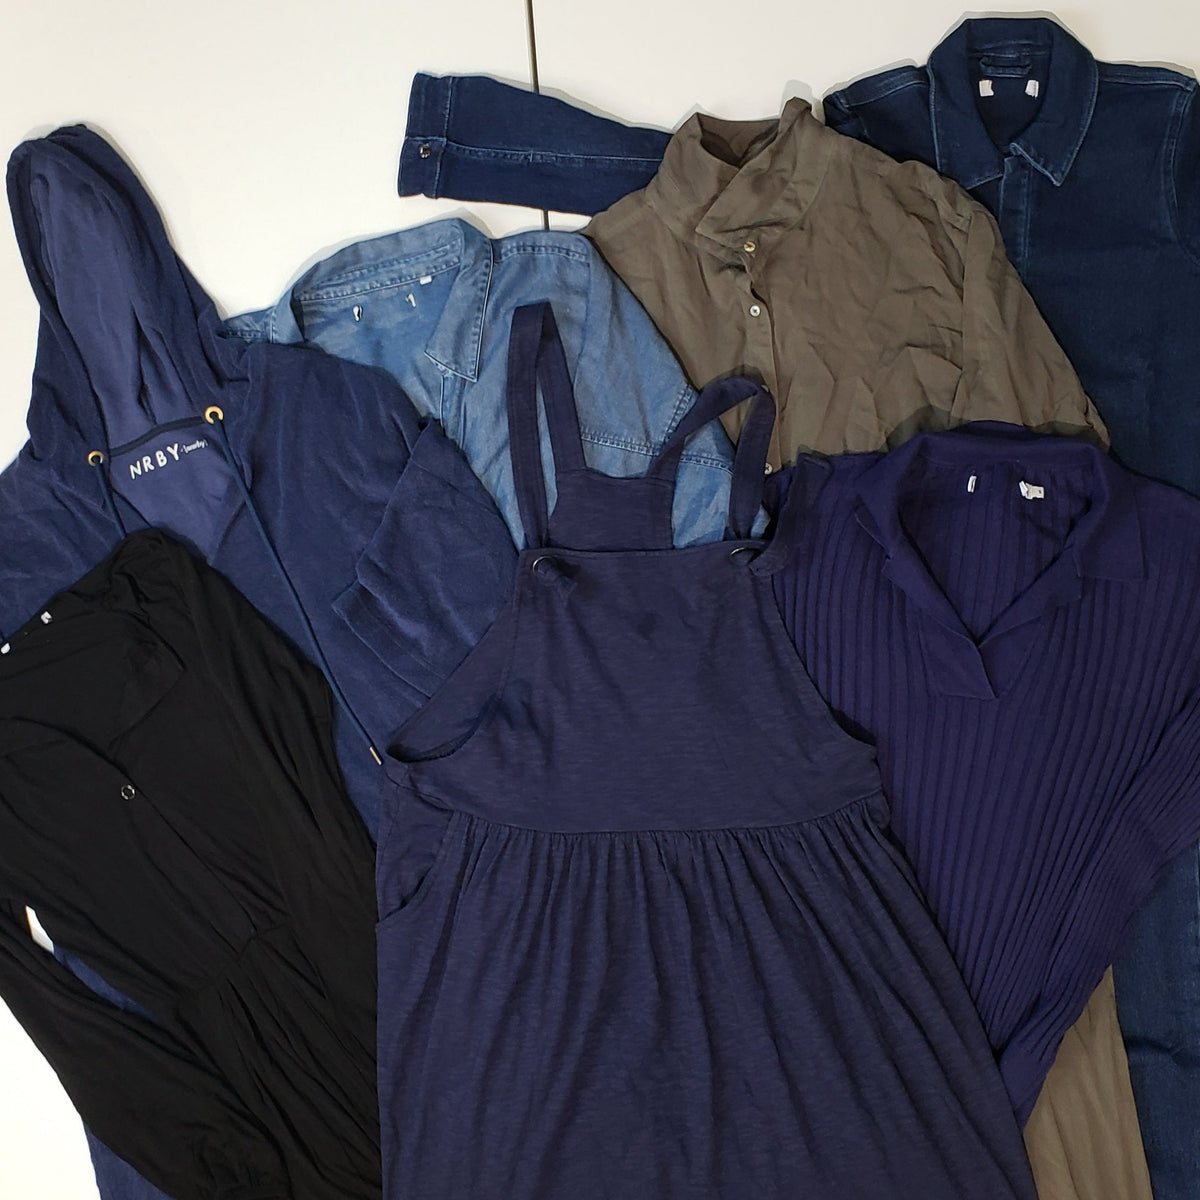 x10 Women's NRBY Sample Mixed Colour Jumpsuits & Dresses Bundle